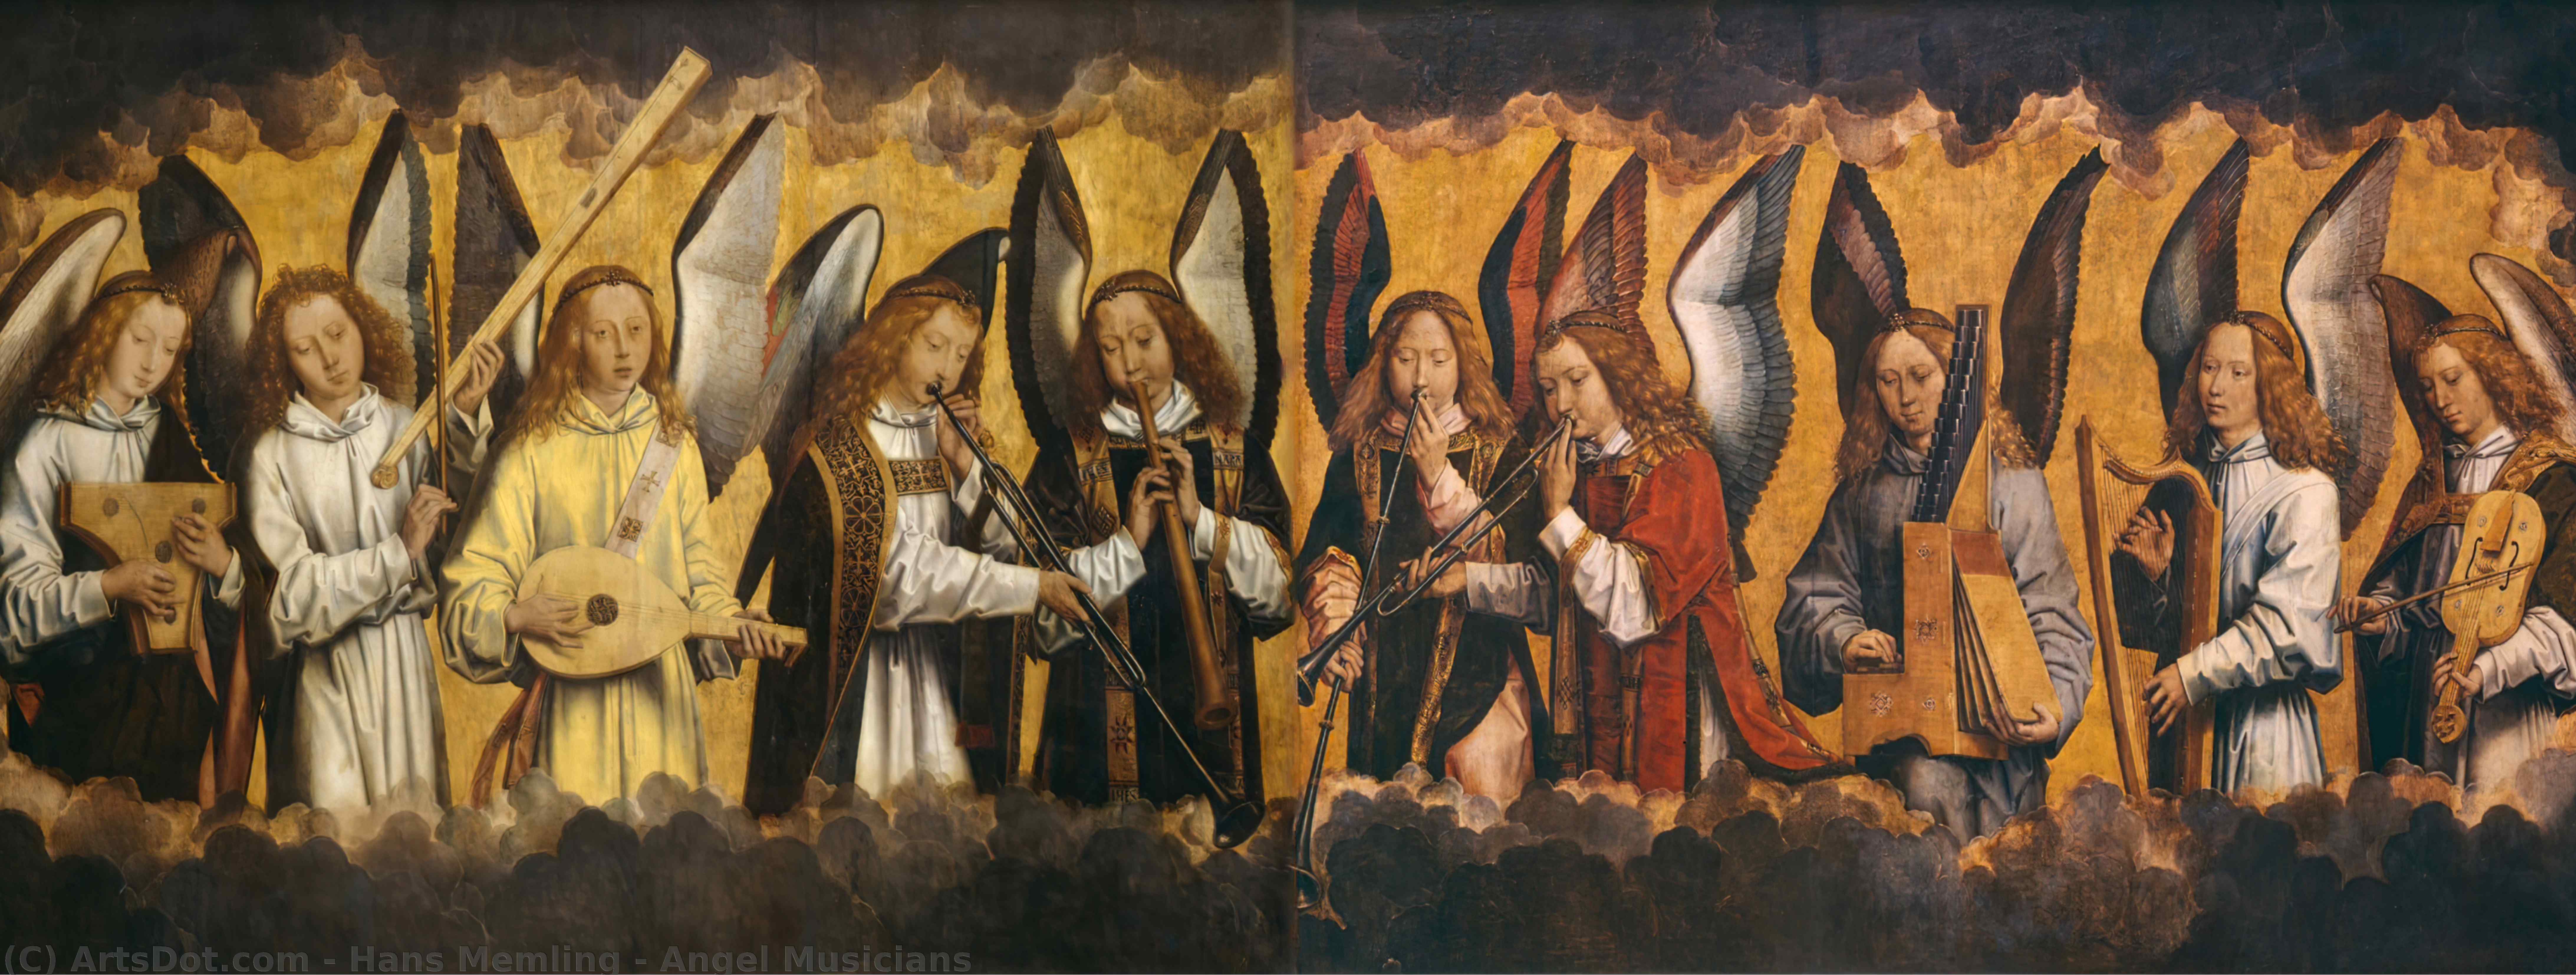 WikiOO.org - Encyclopedia of Fine Arts - Malba, Artwork Hans Memling - Angel Musicians